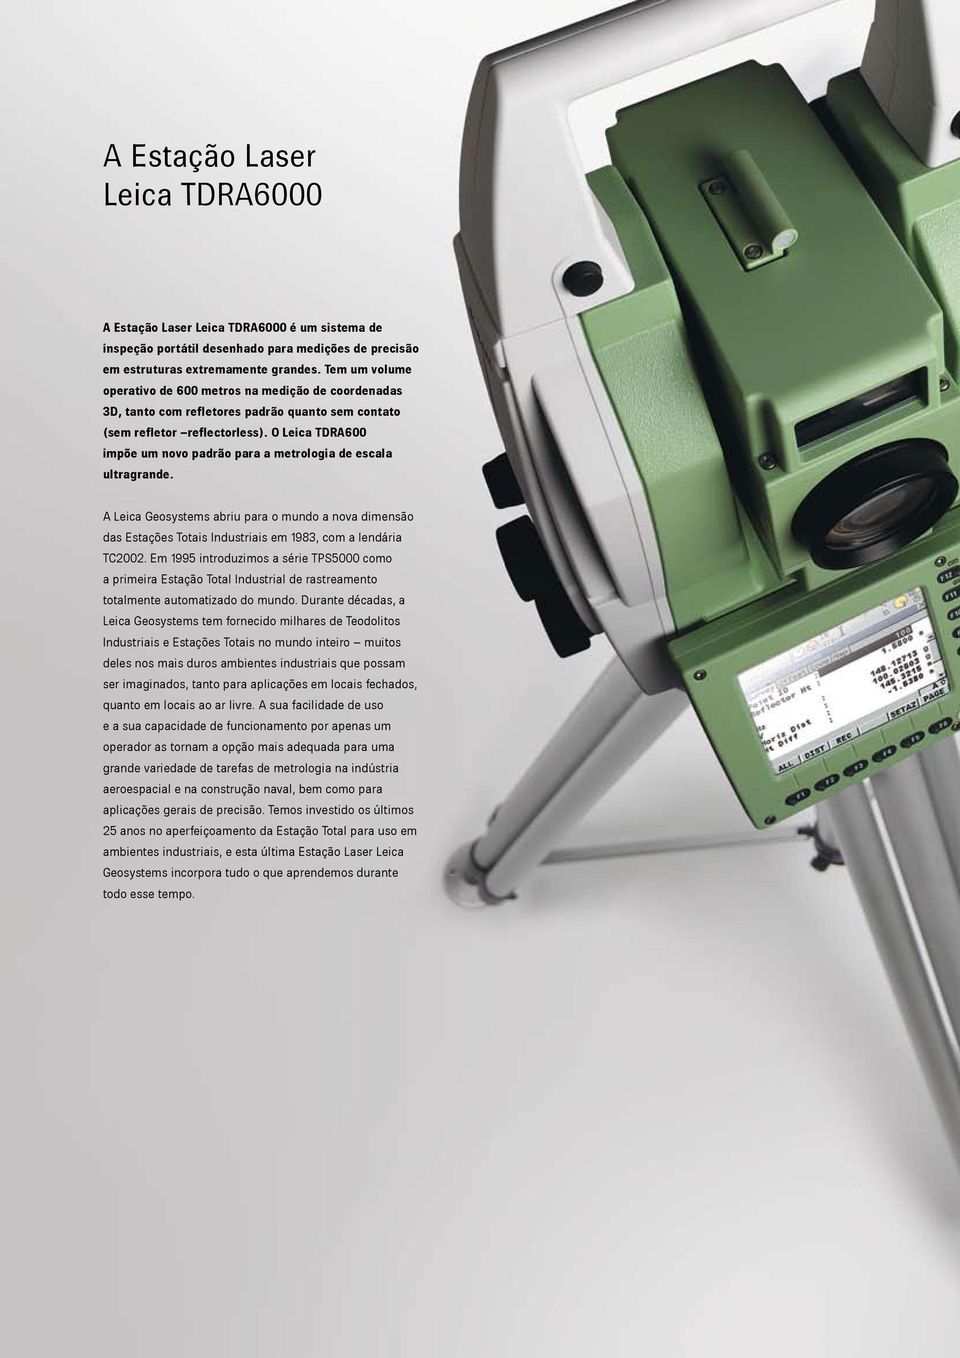 O Leica TDRA600 impõe um novo padrão para a metrologia de escala ultragrande. A Leica Geosystems abriu para o mundo a nova dimensão das Estações Totais Industriais em 1983, com a lendária TC2002.